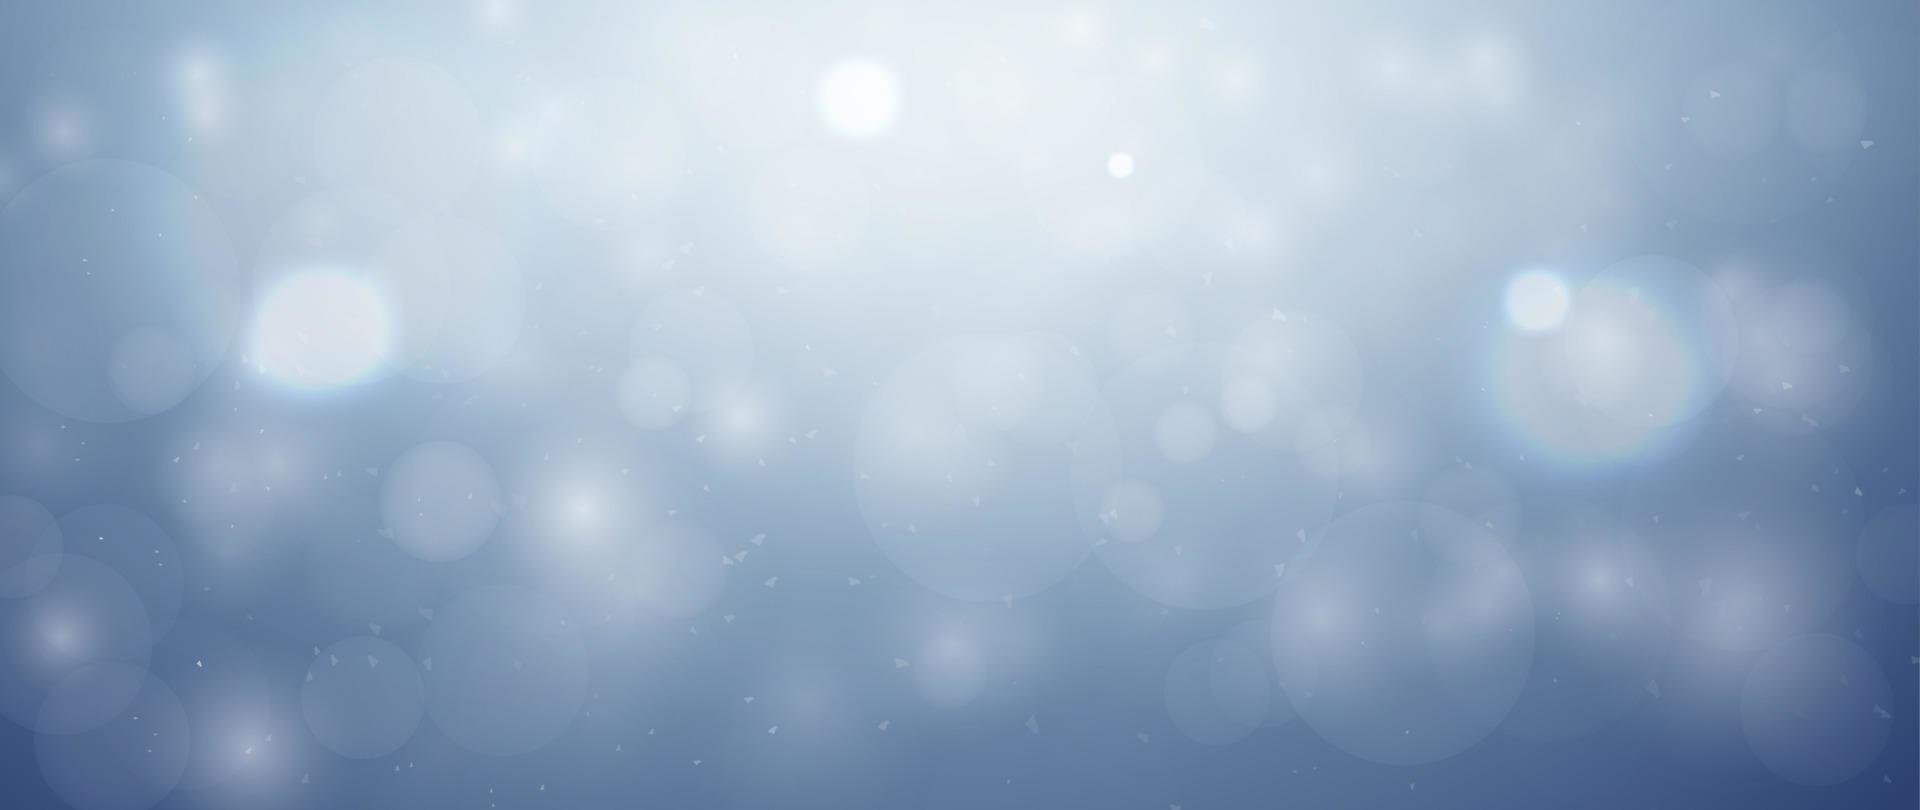 vrolijk Kerstmis achtergrond. glimmend blauw lucht achtergrond wazig met wit kristal sneeuwvlokken en mooi licht bokeh. Kerstmis vector achtergrond